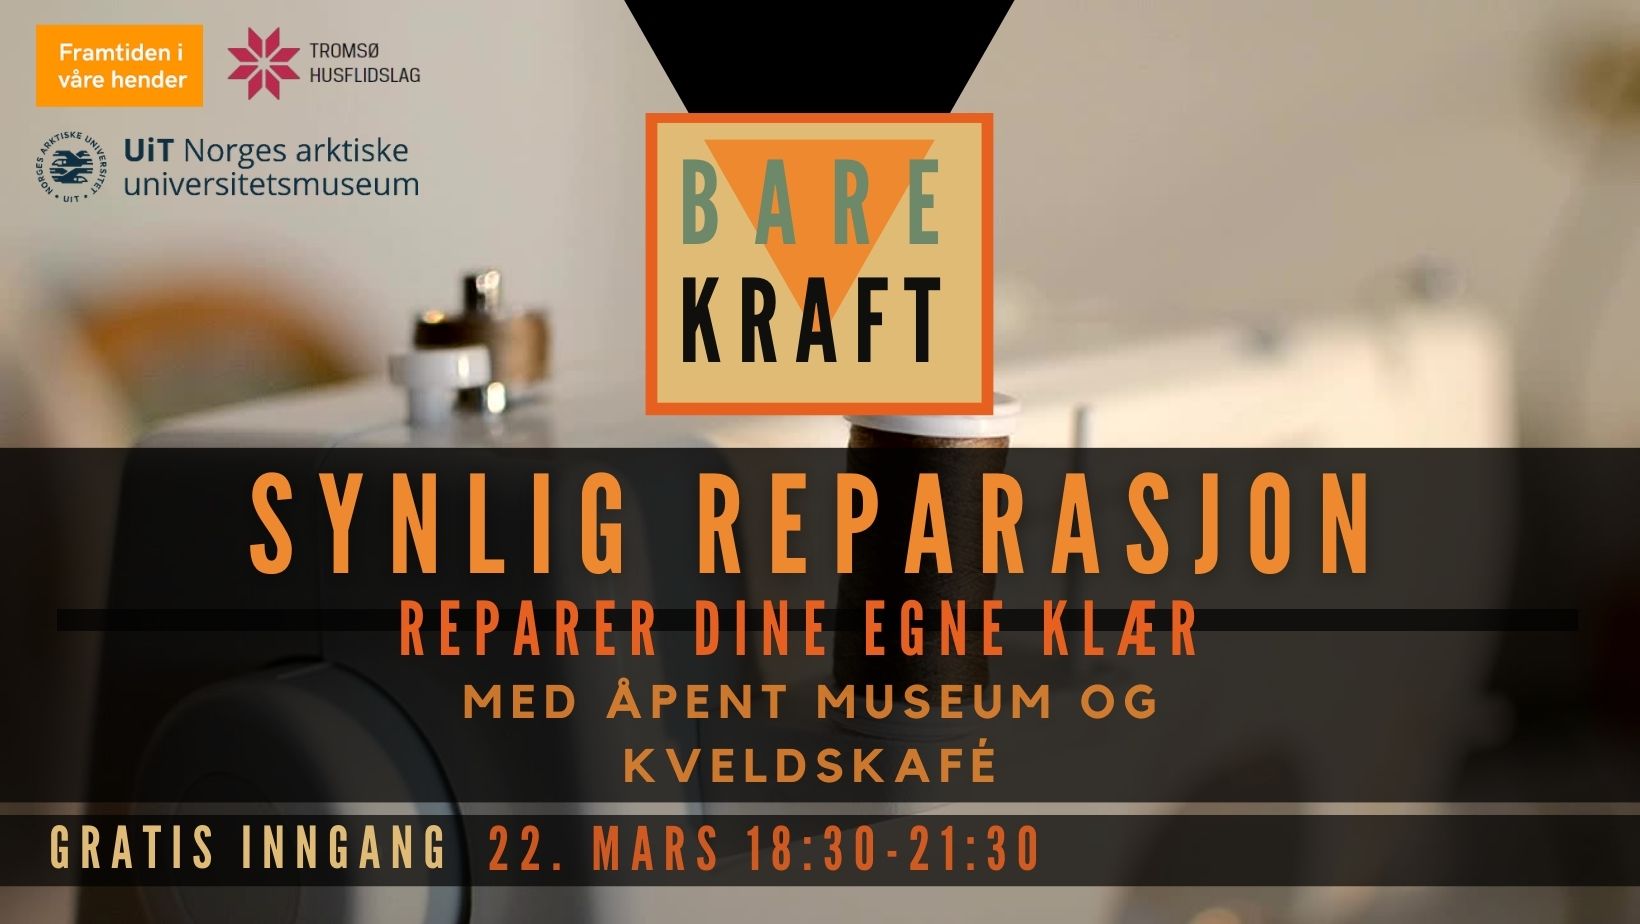 Lokallaget er med på BAREKRAFT på Tromsø Museum